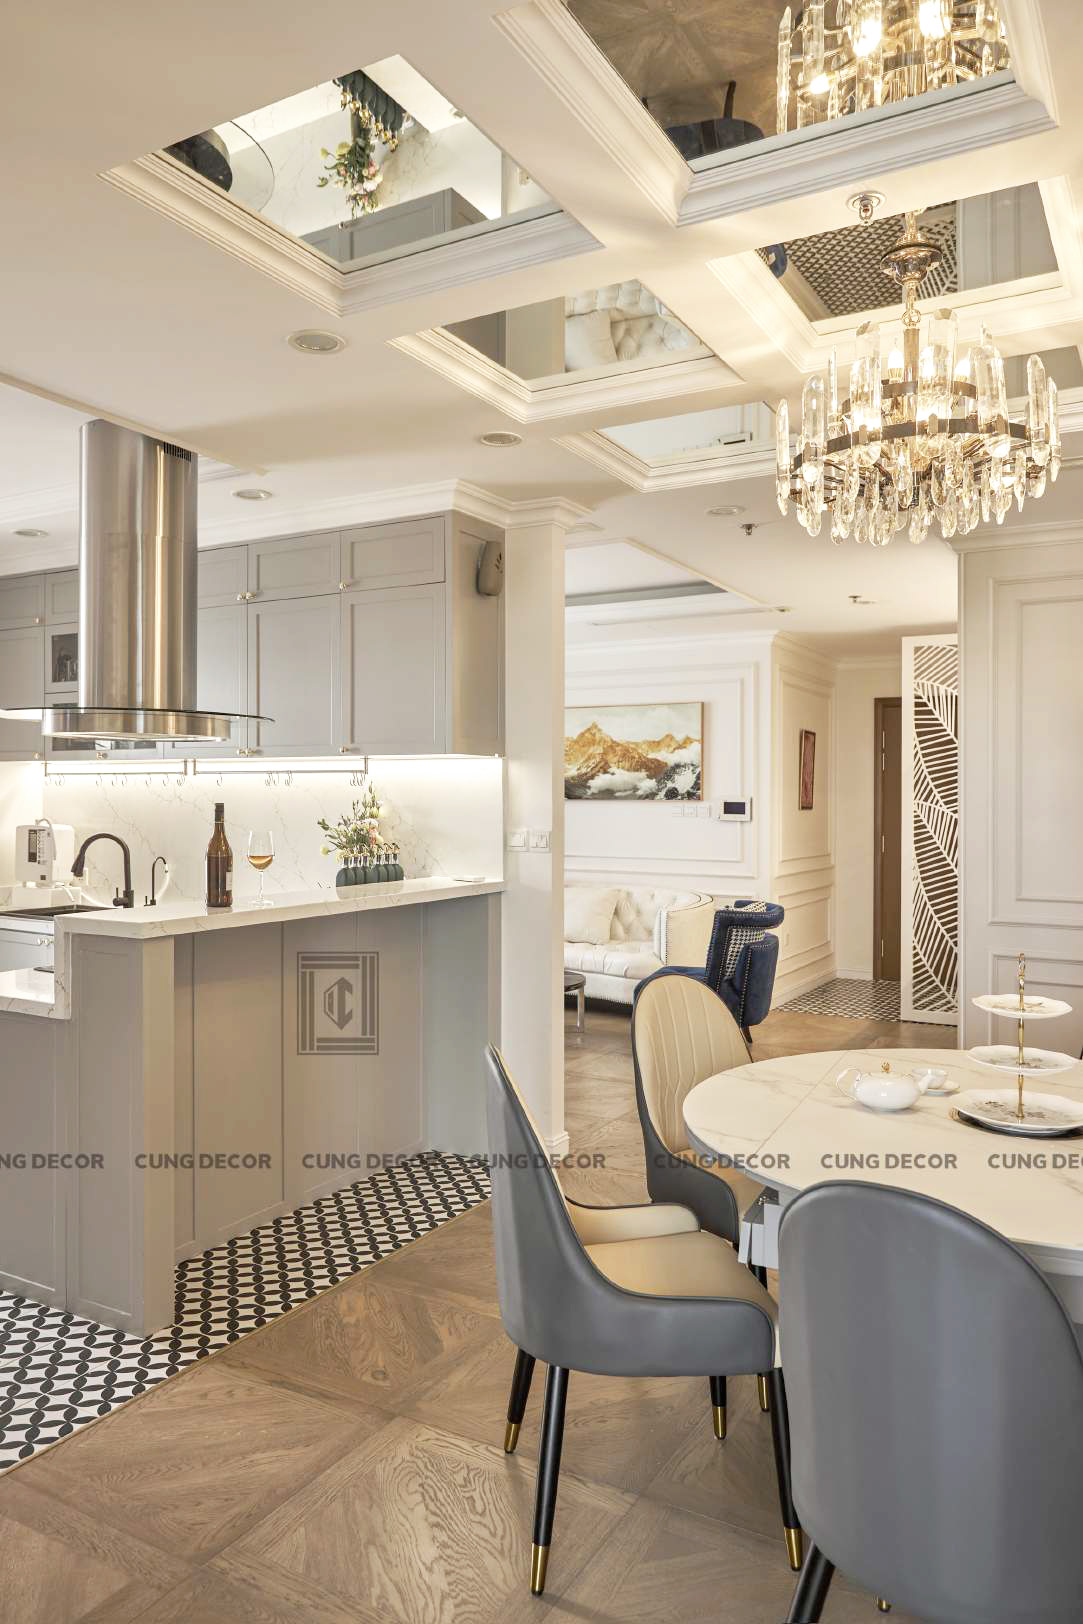 Hoàn thiện nội thất phòng ăn và phòng bếp Căn hộ Landmark 81 Vinhomes Central Park phong cách Tân cổ điển Neo Classic